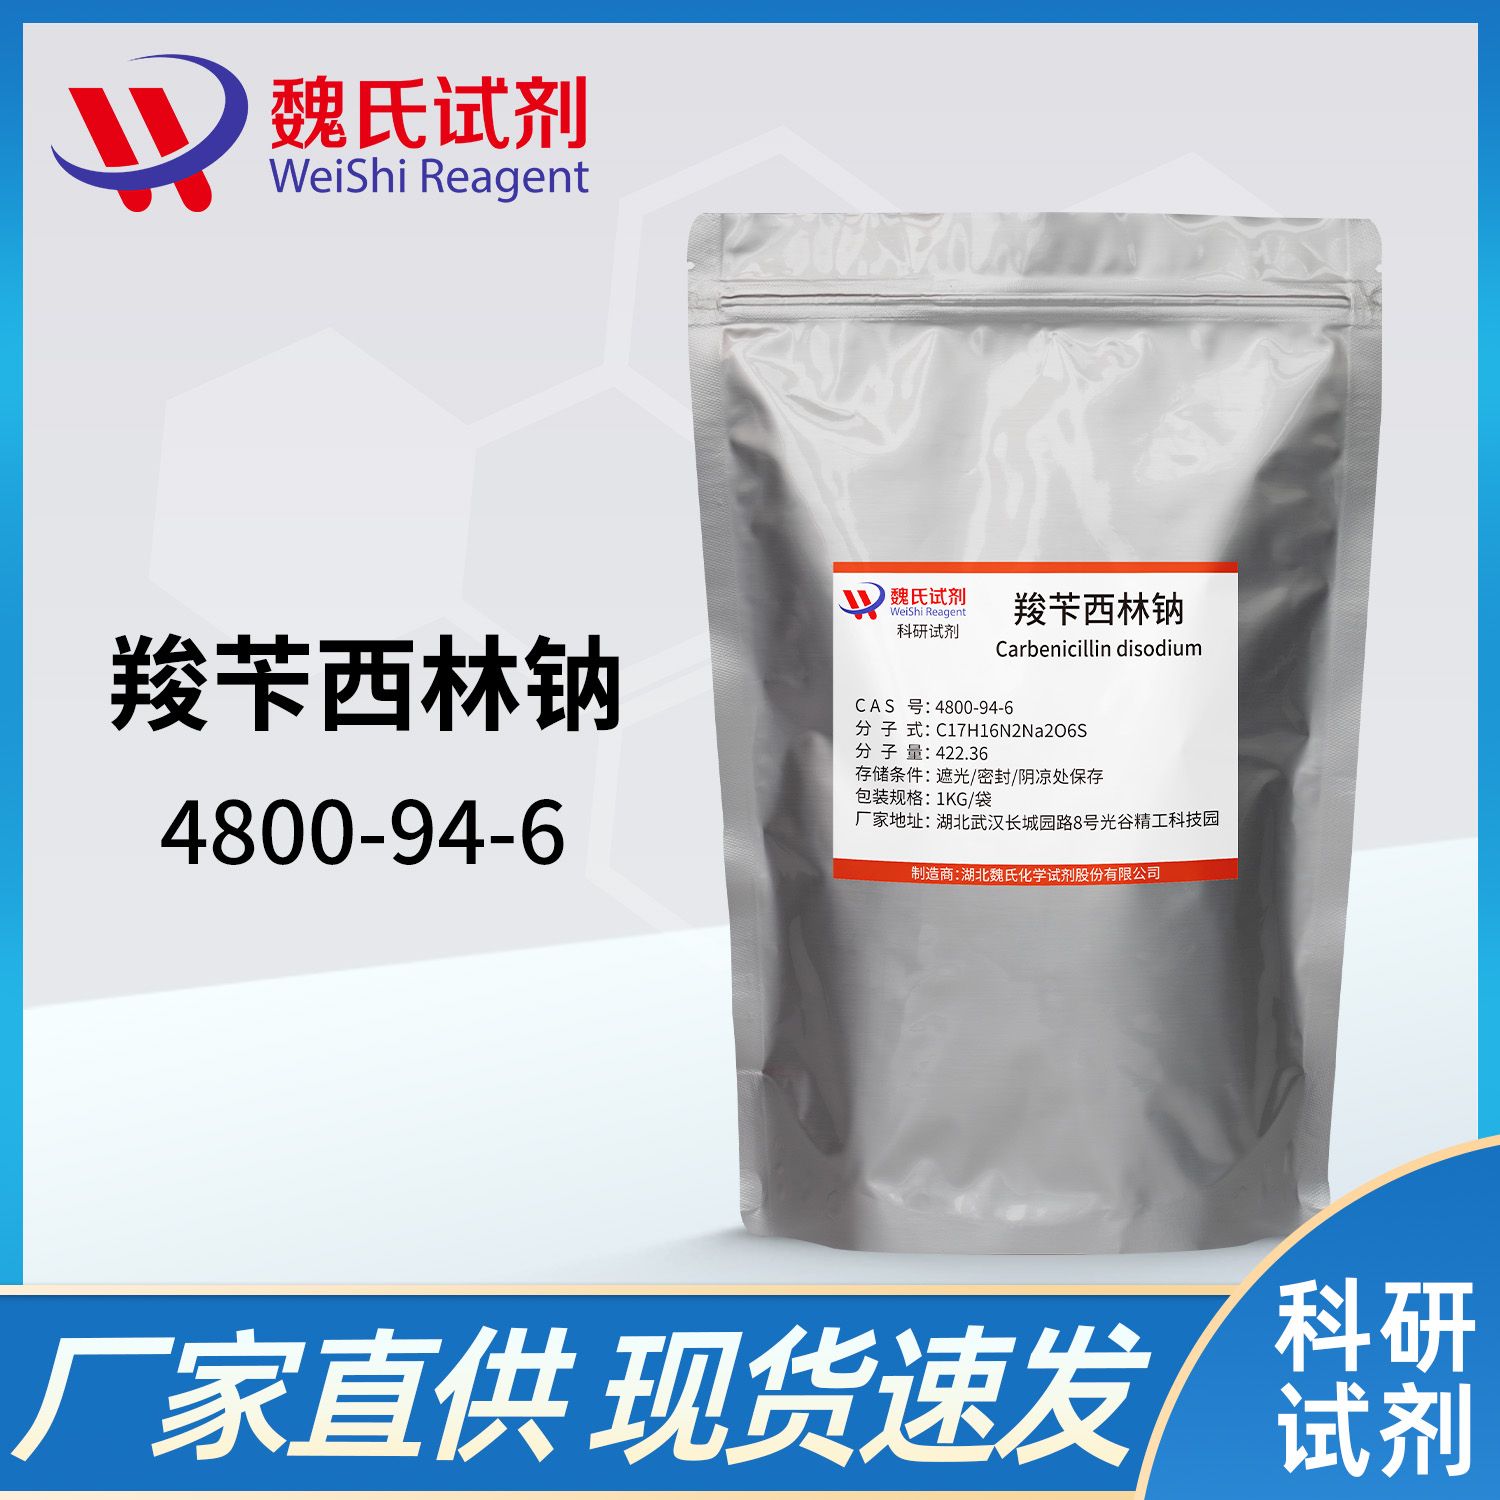 4800-94-6 /羧苄青霉素钠；羧苄西林钠/Carbenicillin disodium